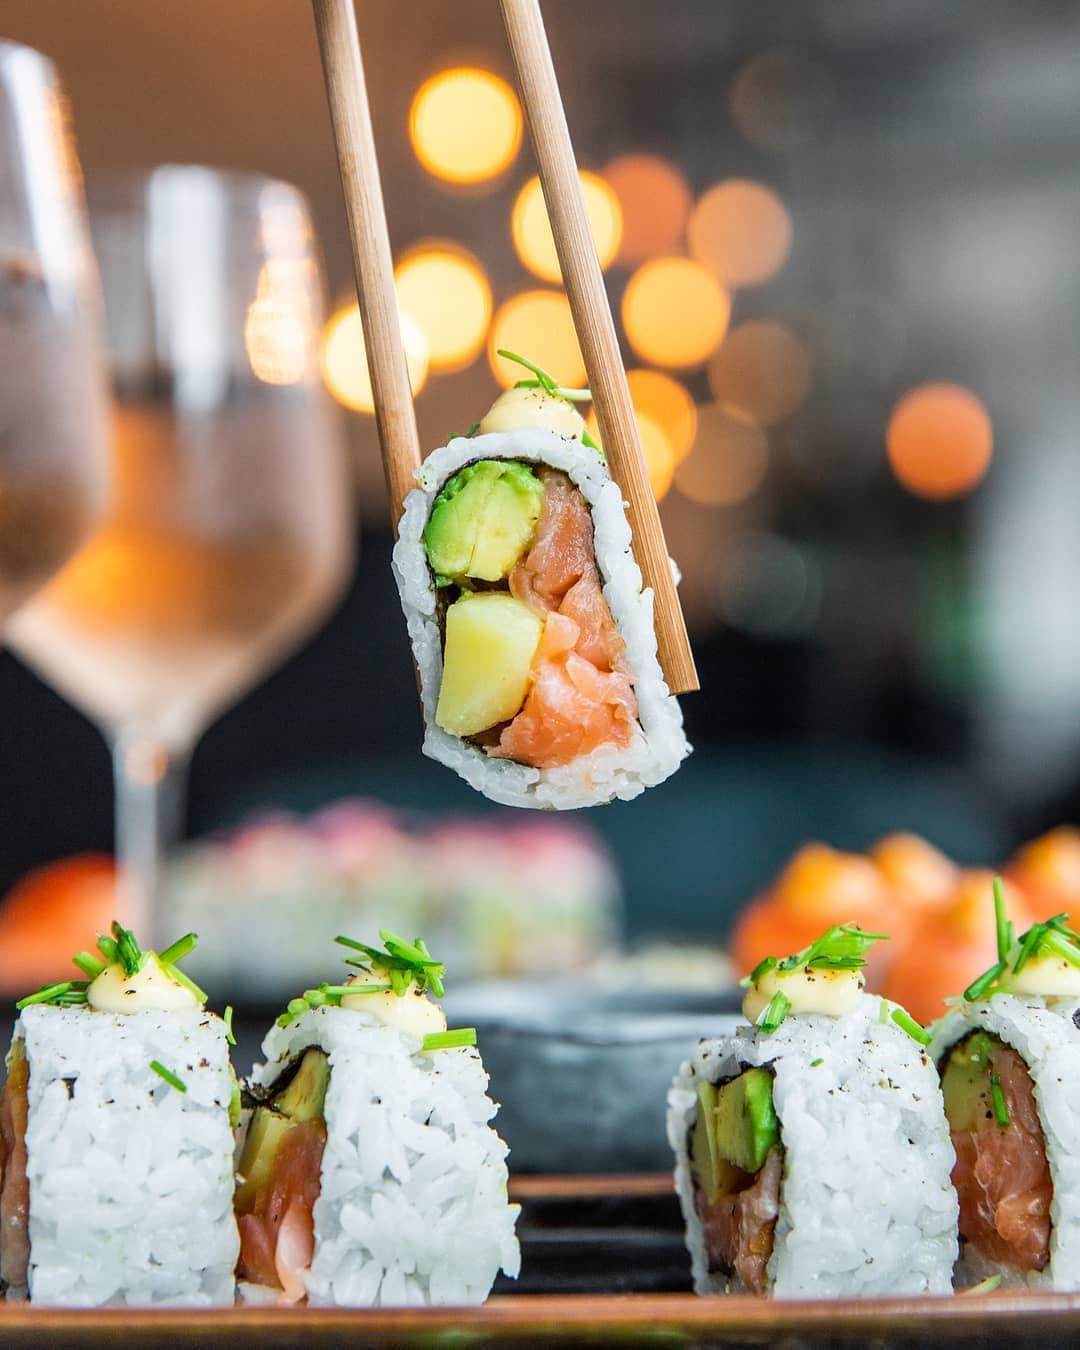 СушиМания Гомель on Instagram: “Доставка суши за 40 минут в Гомеле! (подробнее на сайте, раздел &quot;акции&quot;) А так же… | Food photo, Food photography, Sushi inspiration